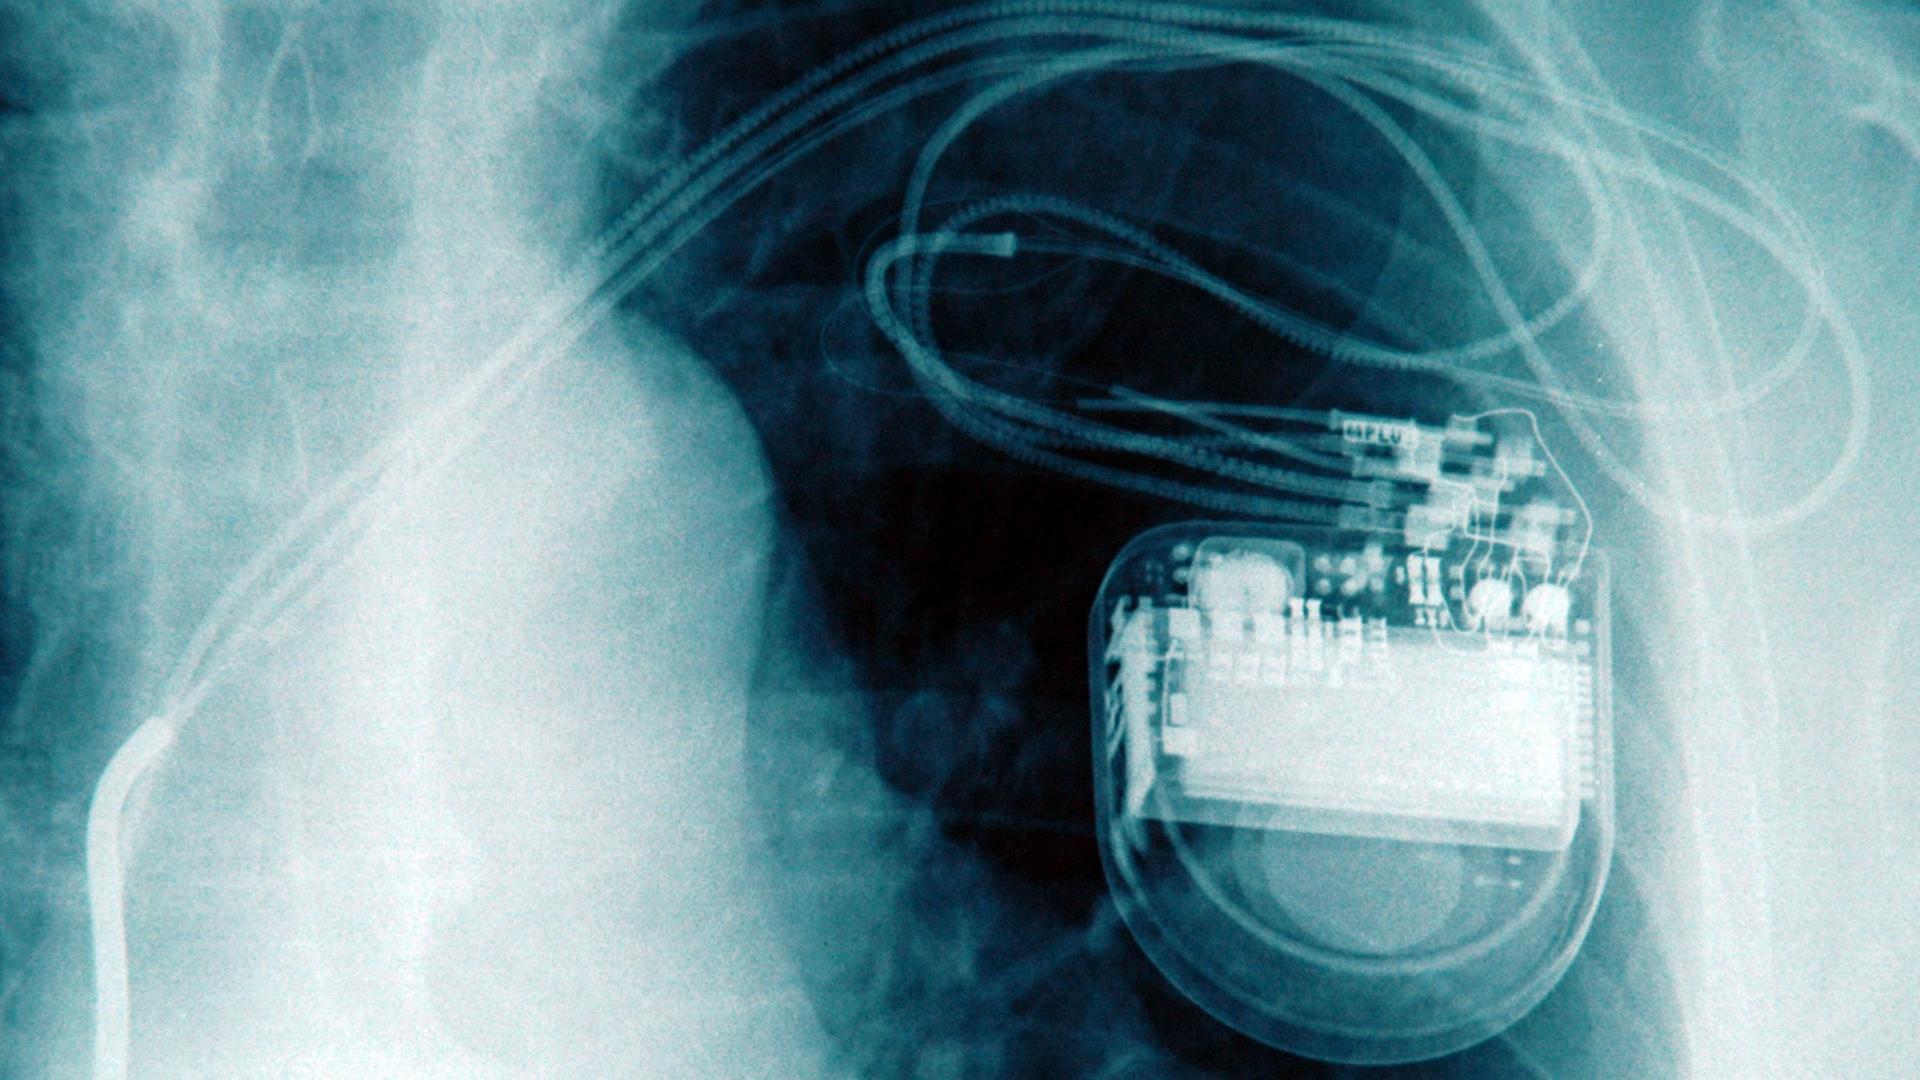 Auf dem Röntgenbild eines Brustkorbs ist ein implantierter Herzschrittmacher zu erkennen